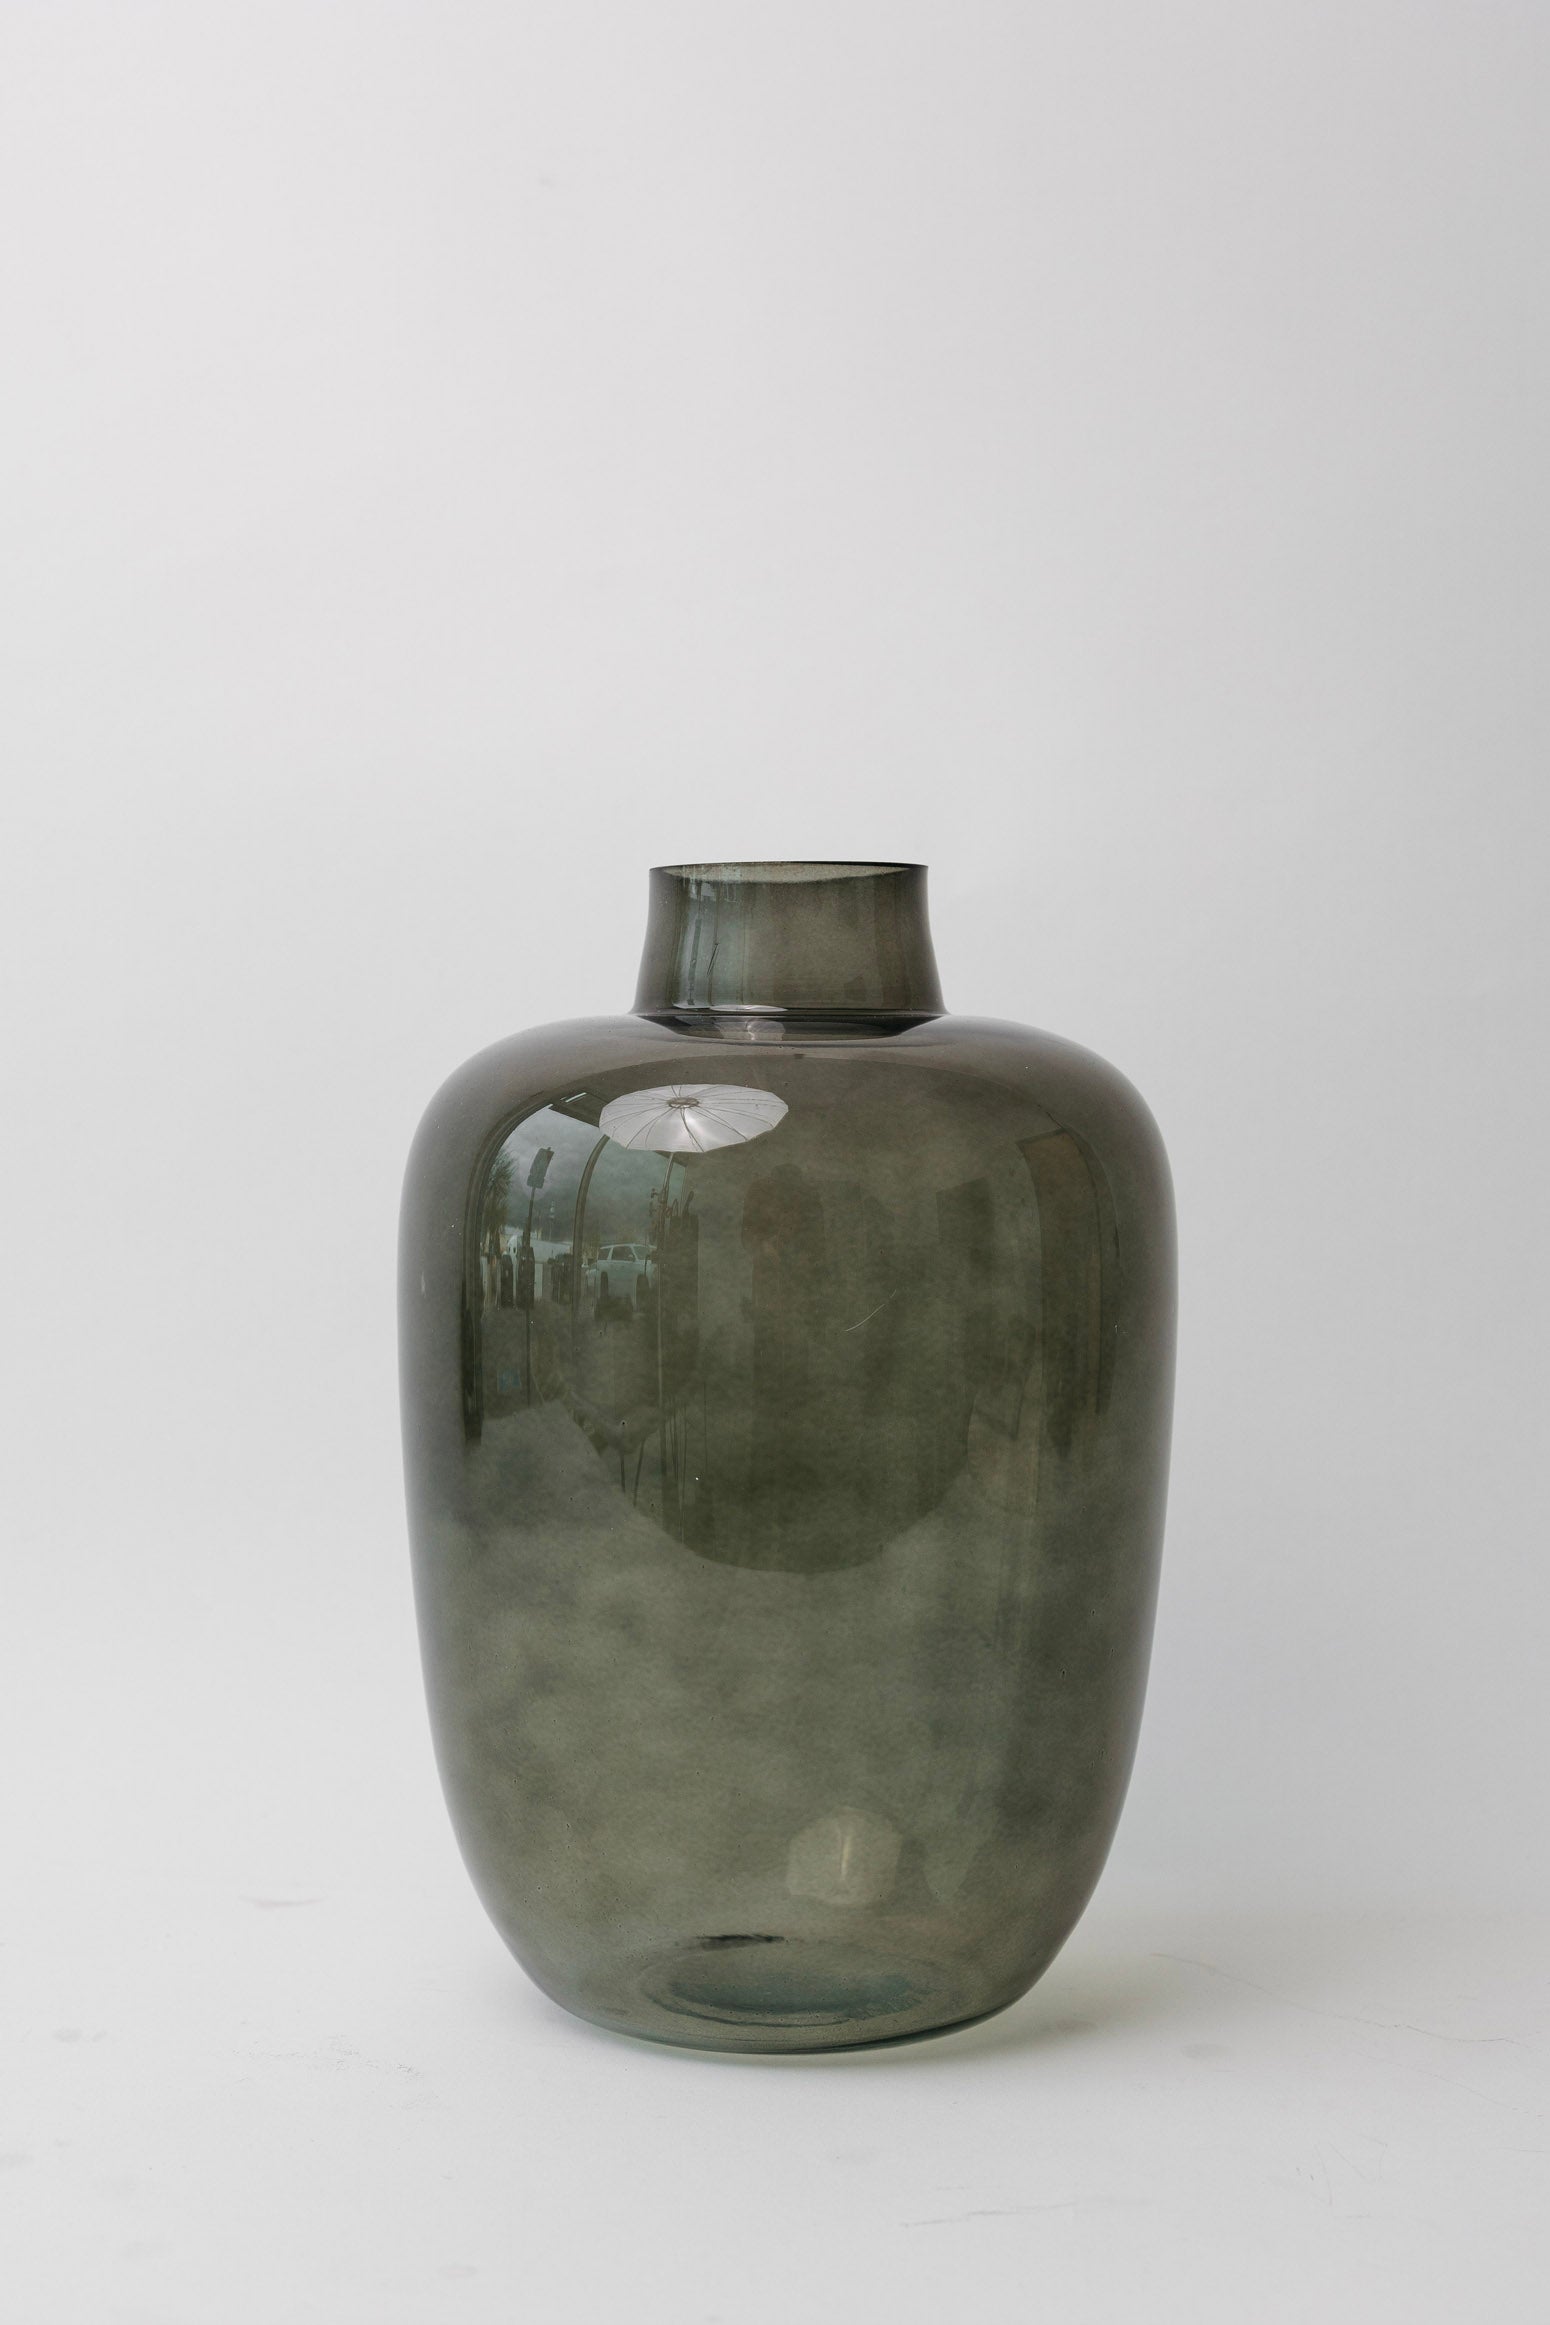 Bristol Smoked Vase - 3 Sizes